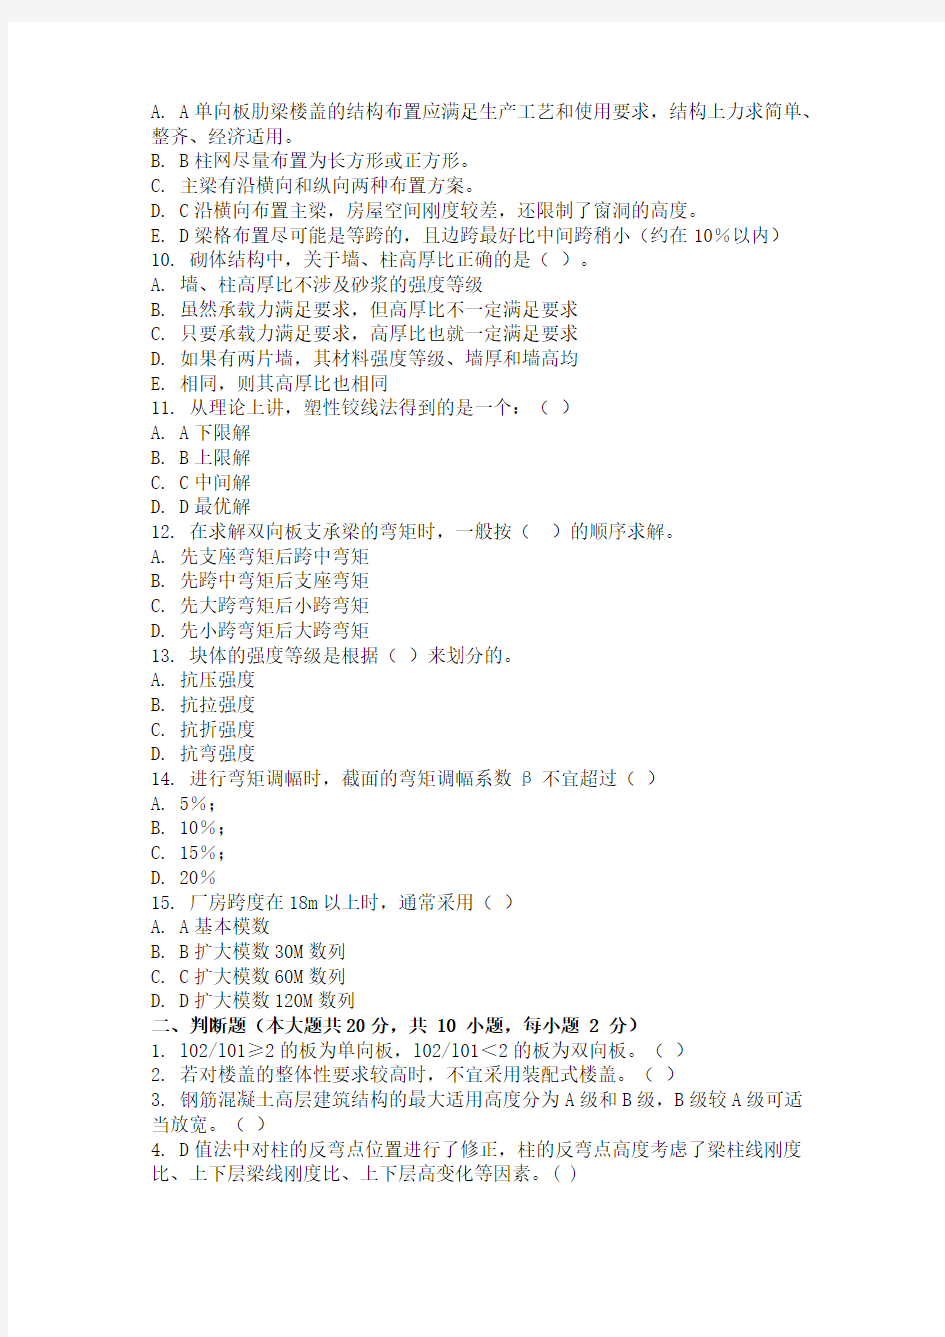 (完整版)重庆大学网教作业答案-建筑结构(第1次)